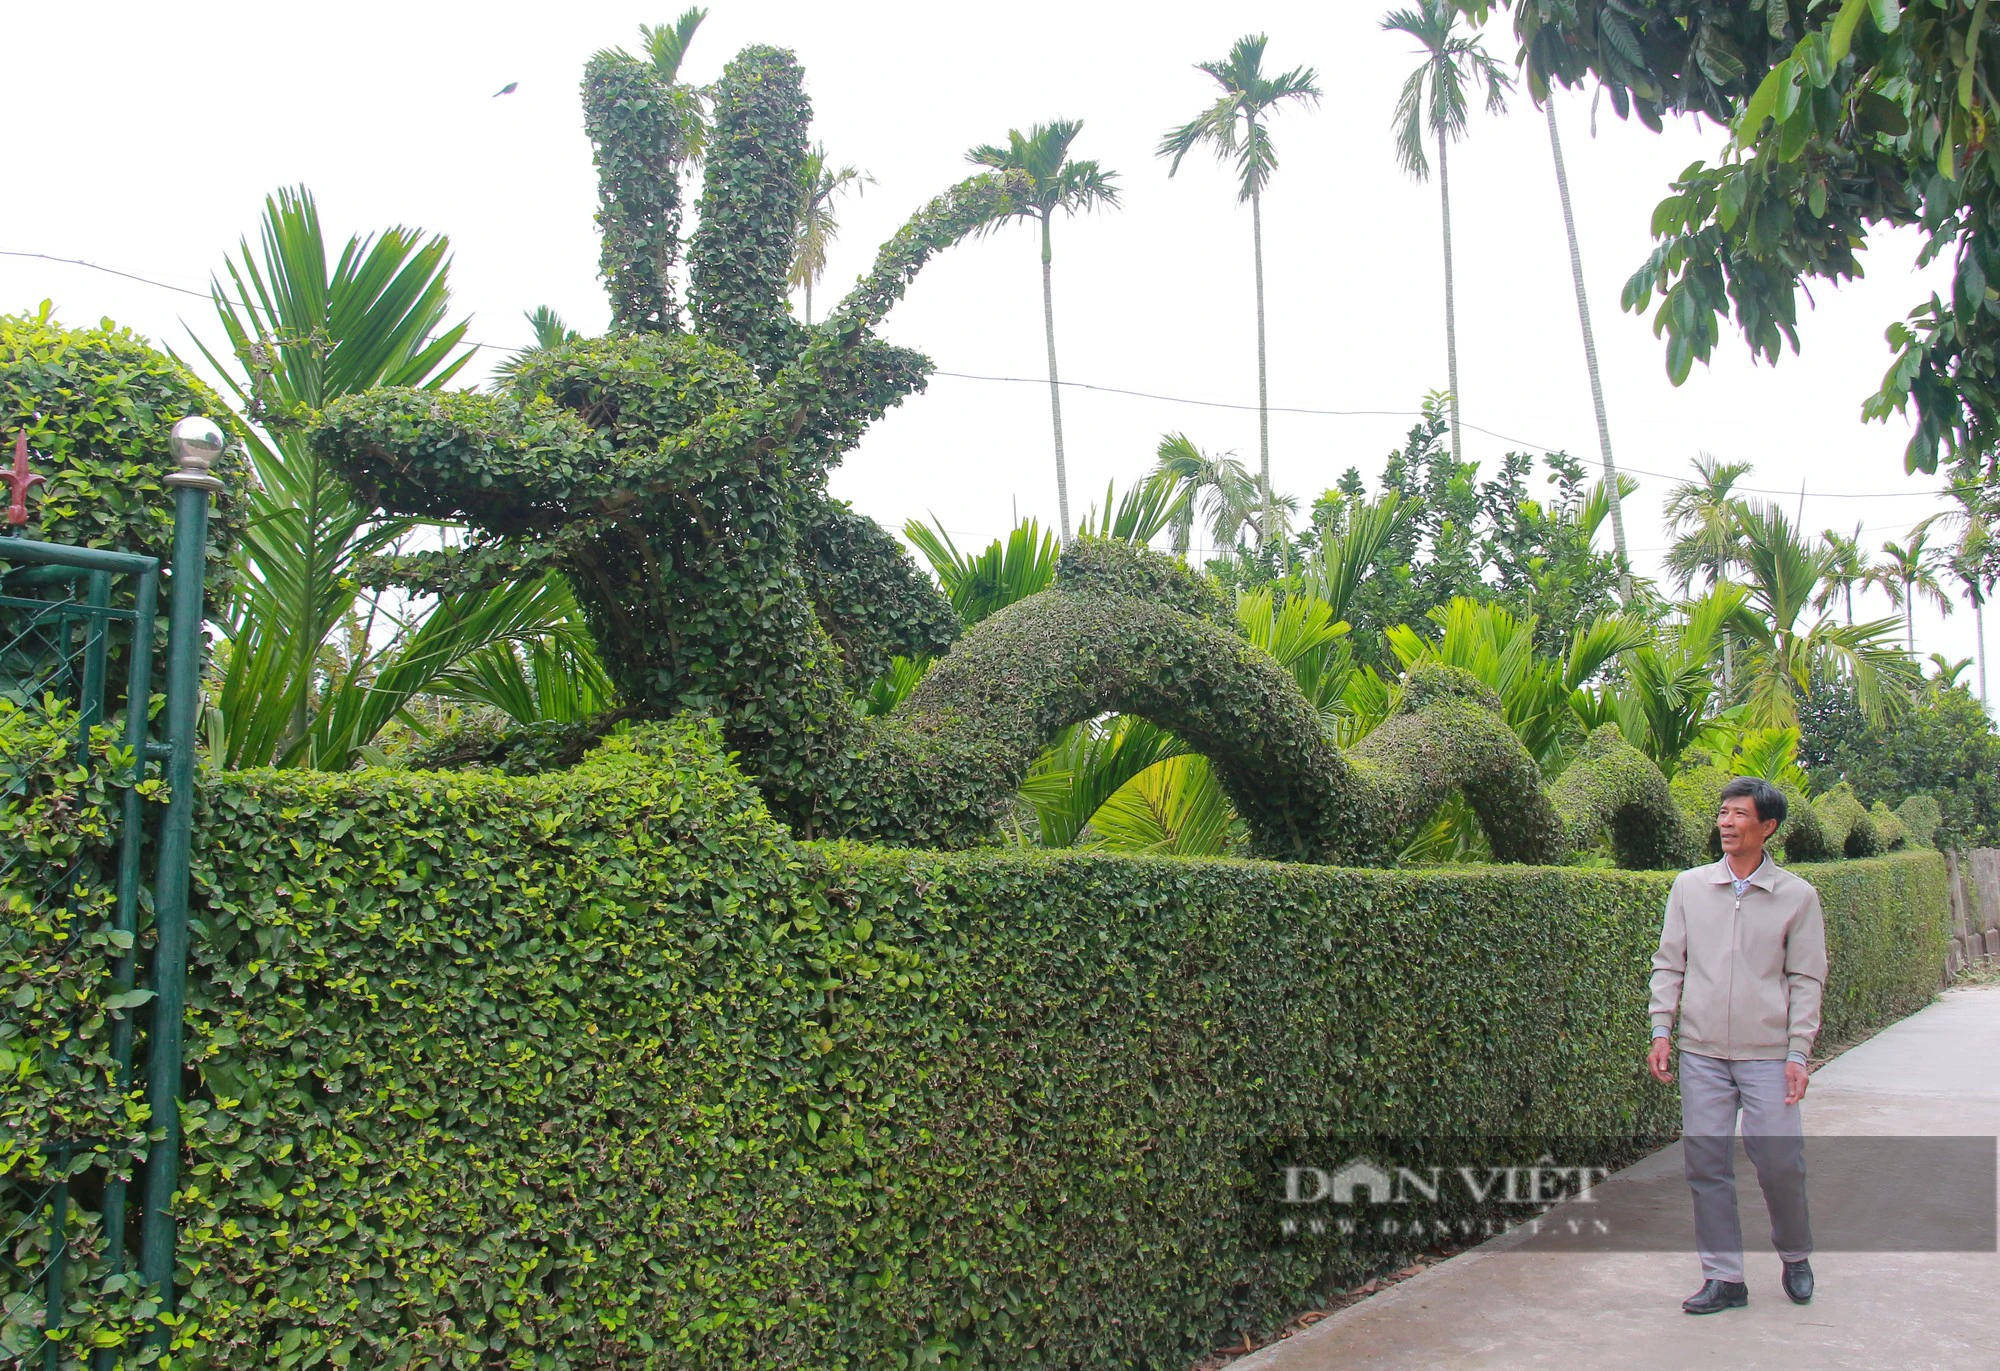 Lạ mắt với linh vật khổng lồ hình rồng dài 30 mét của một gia đình ở Nam Định làm từ cây duối- Ảnh 1.